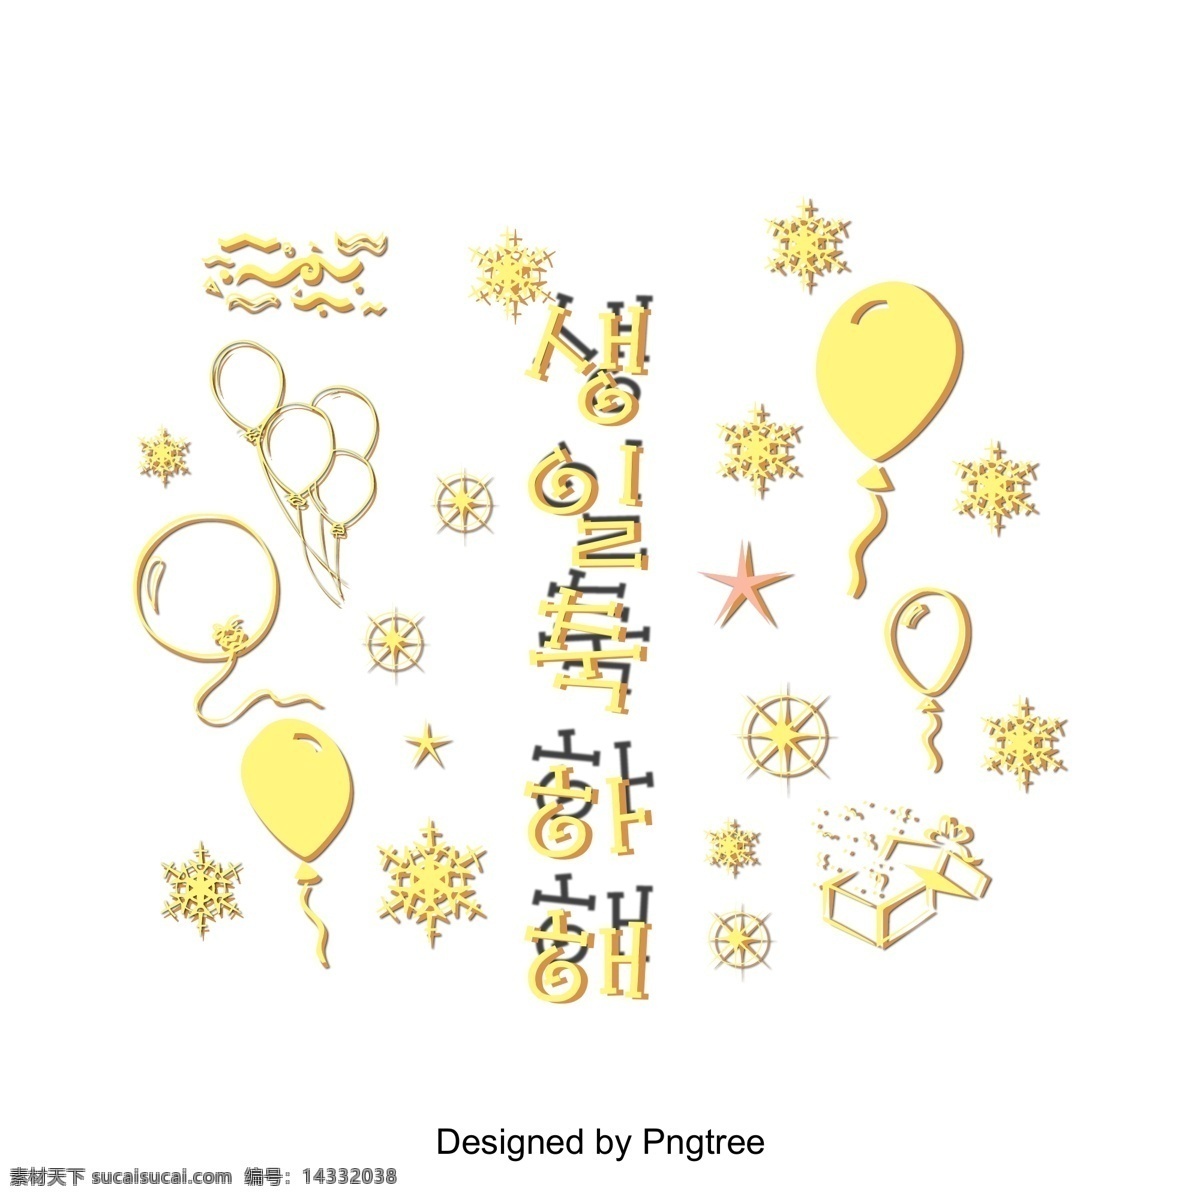 祝 生日 快乐 韩国 场景 中 雪花 闪耀 黄色 星星 祝你生日快乐 气球 明星 闪 立体 韩文 现场 进步 投影 简单